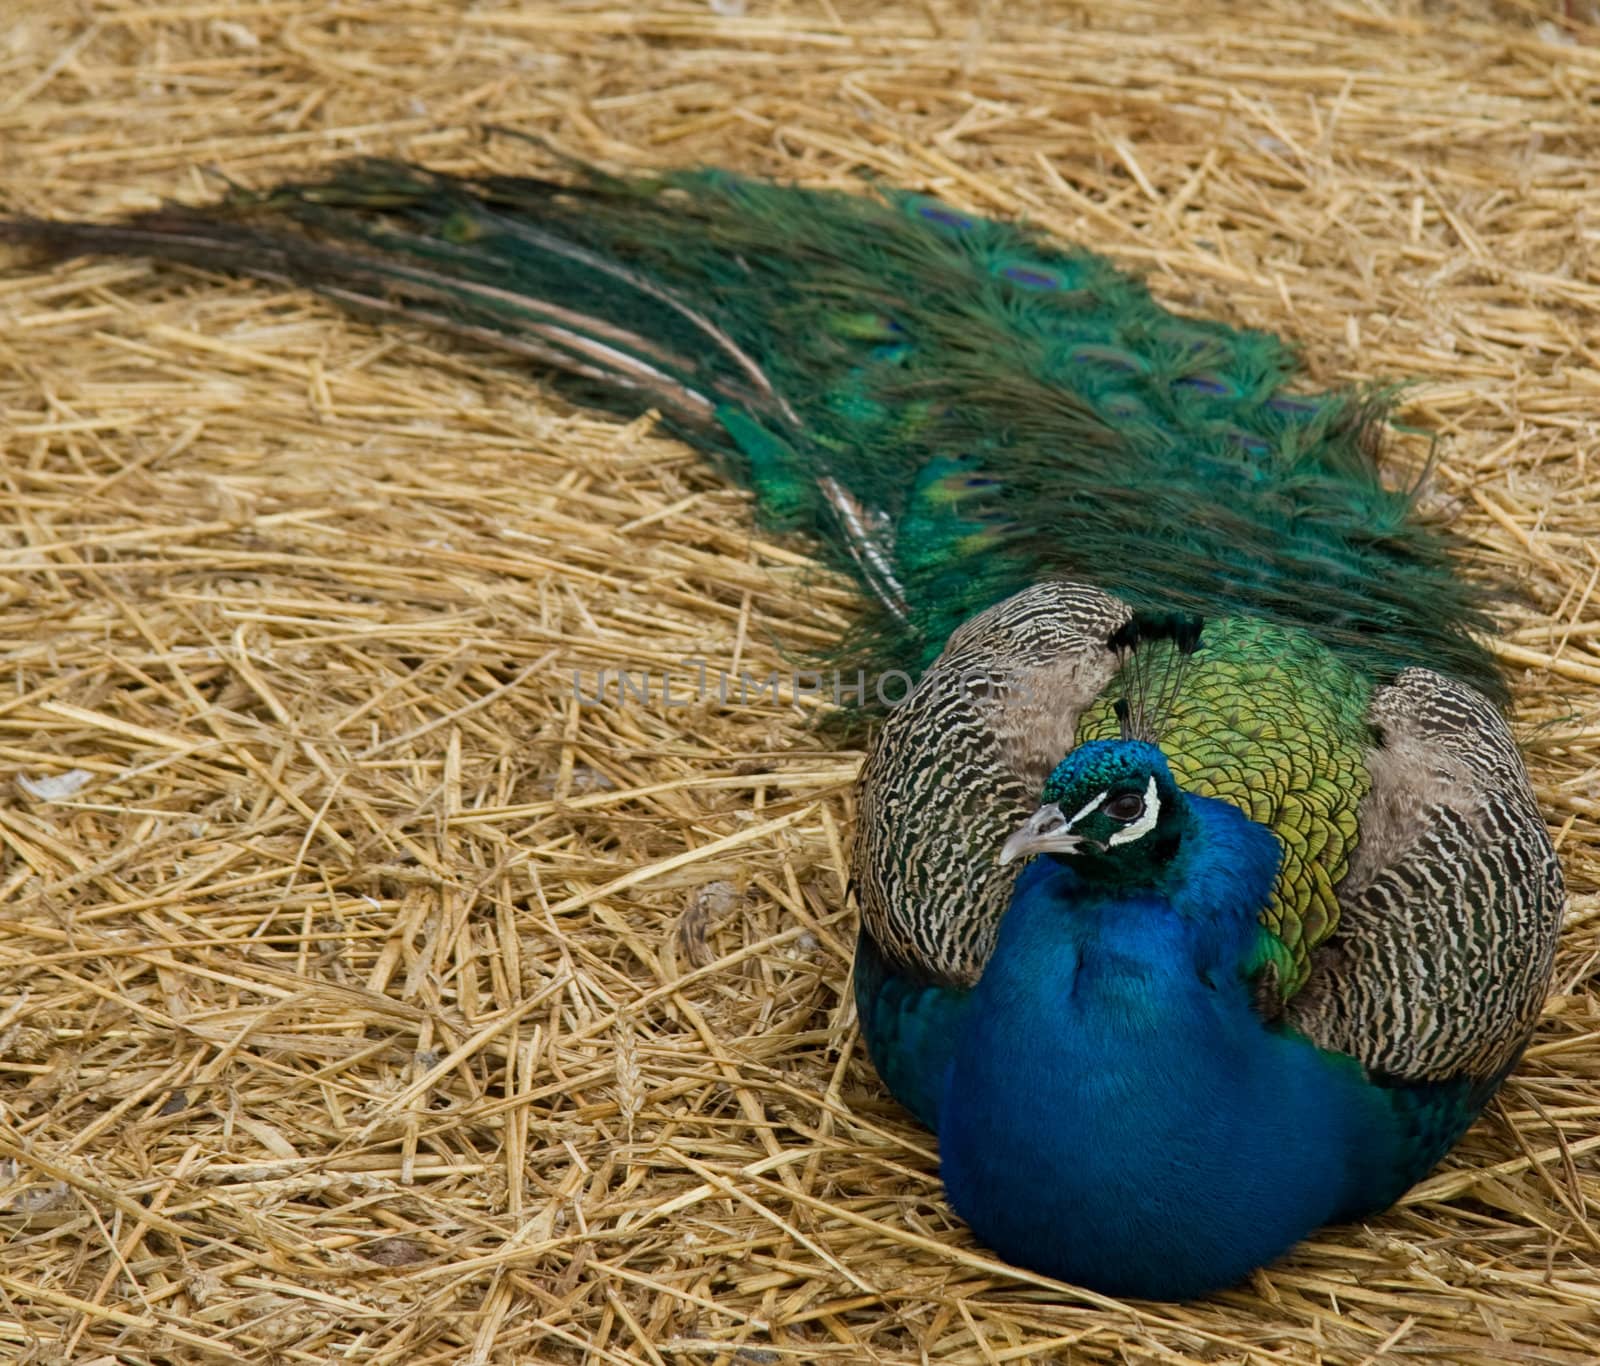 Beautiful peacock resting in hay.